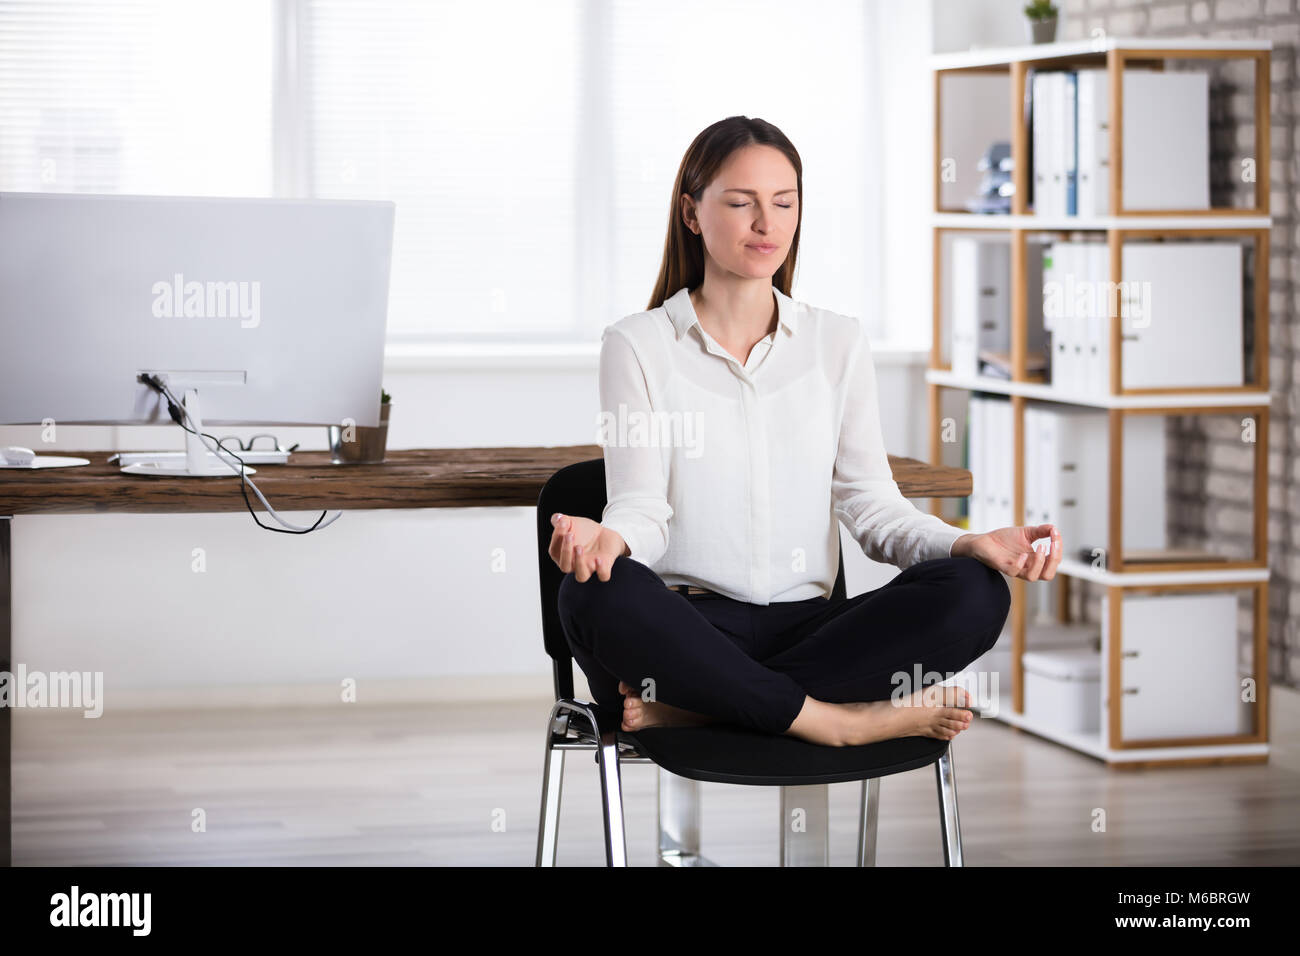 Young Businesswoman Sitting on Chair faisant la méditation Banque D'Images